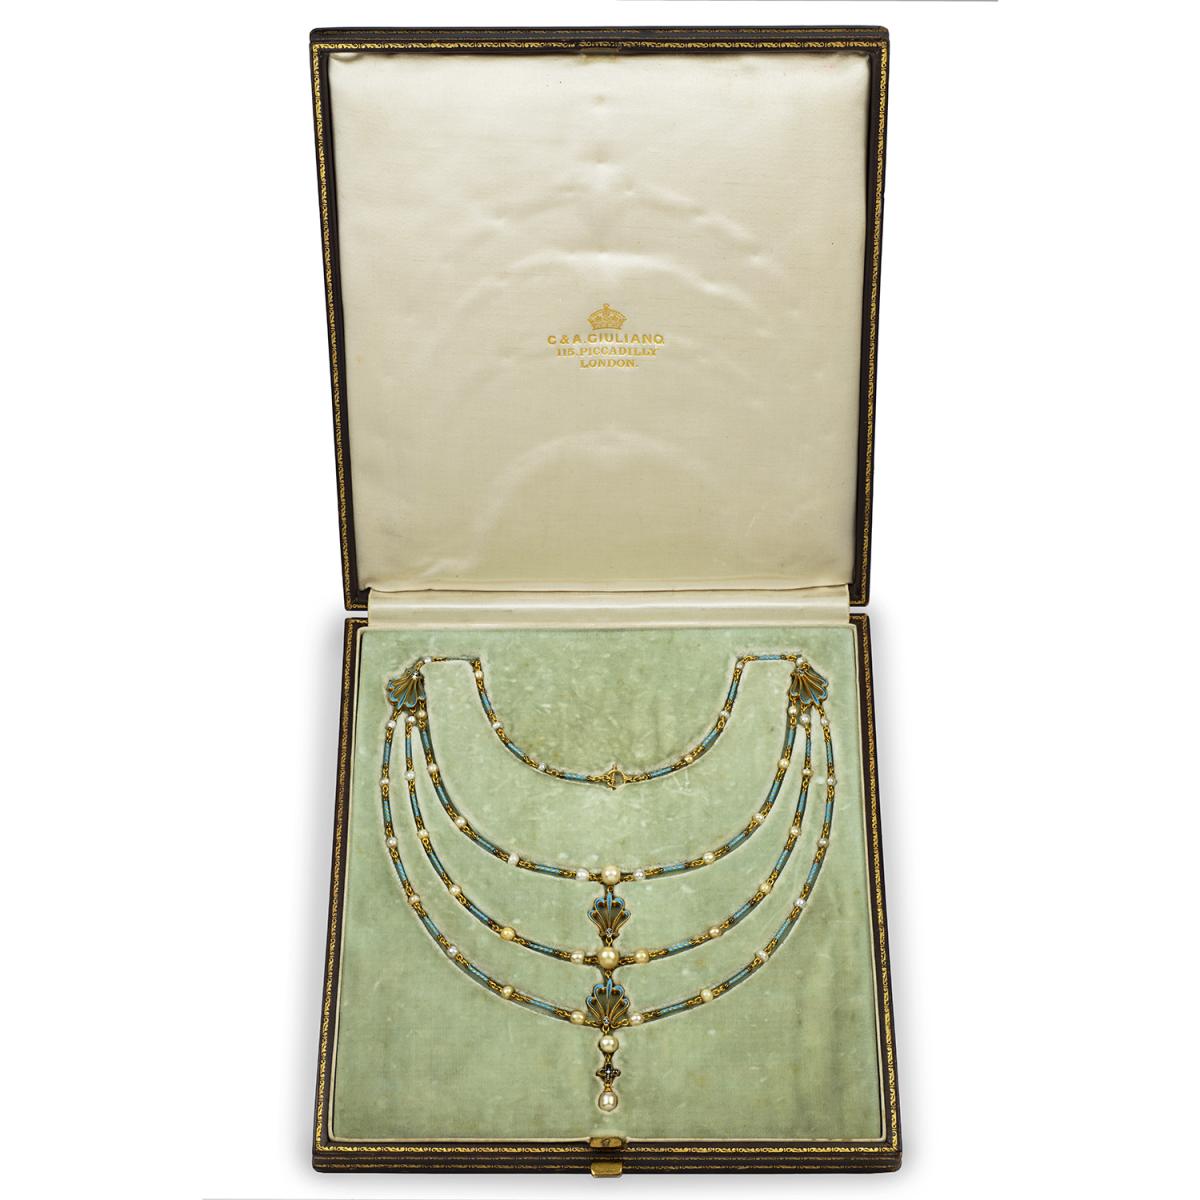 An Important Giuliano necklace, circa 1900